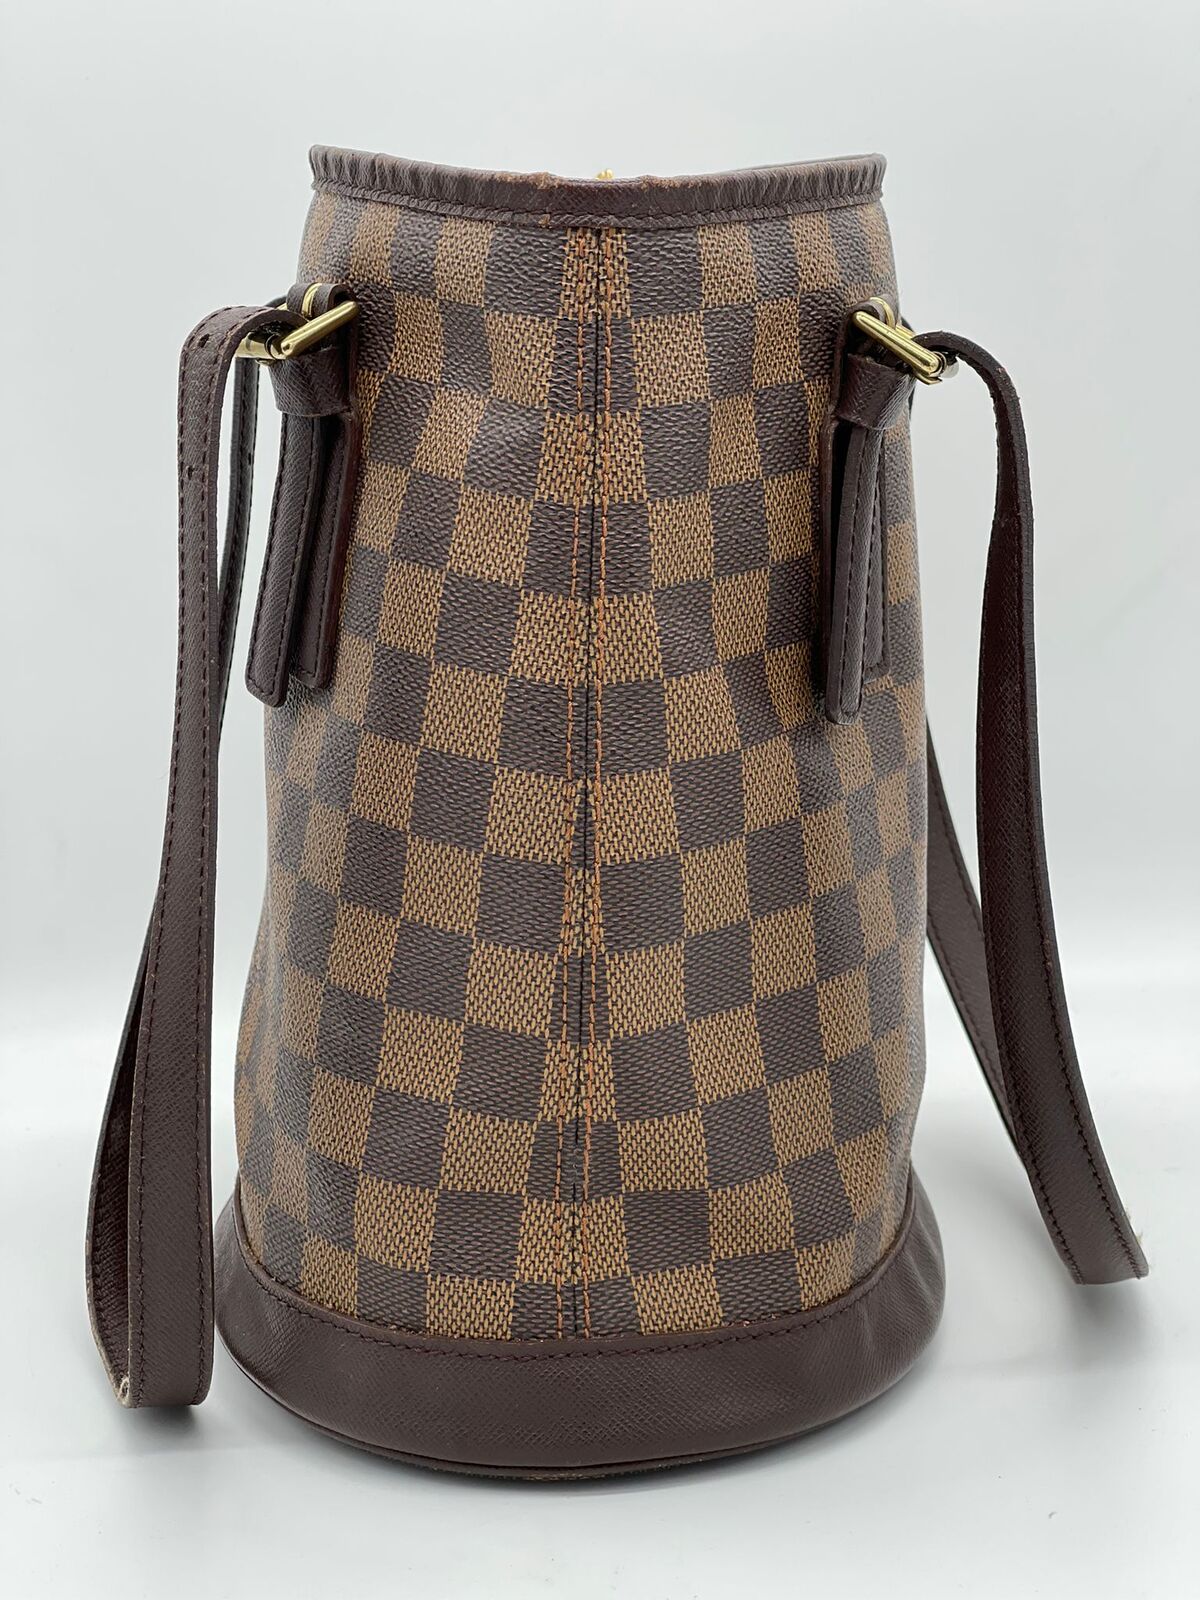 Louis Vuitton 2007 Damier Ebène Marais Shoulder Bag N42240 (Pre-Owned)